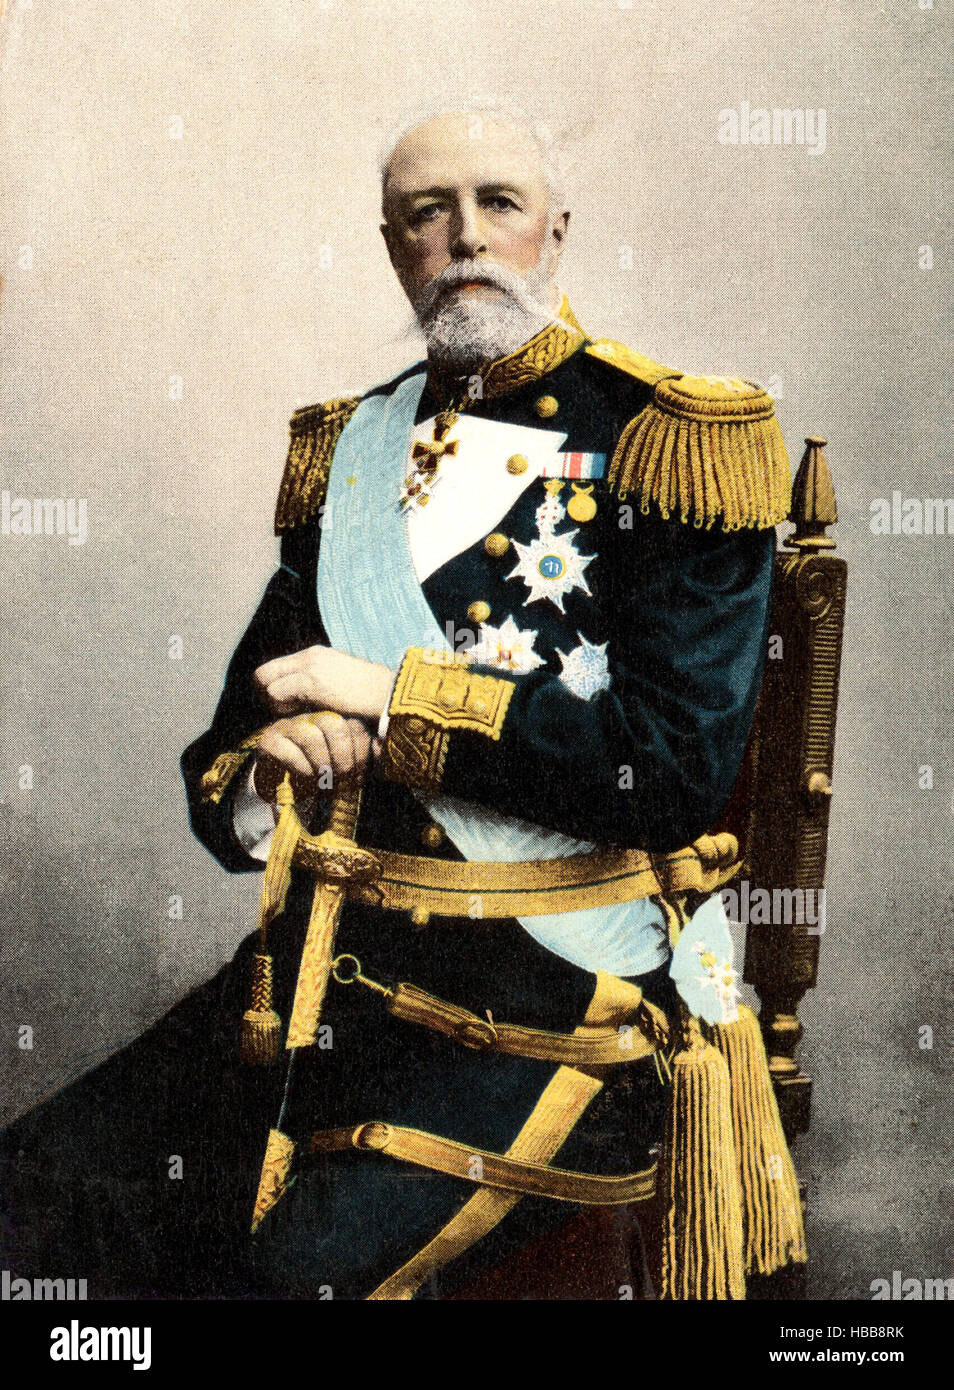 El rey Oscar II de Suecia y Noruega, reinó 1872-1907 Foto de stock